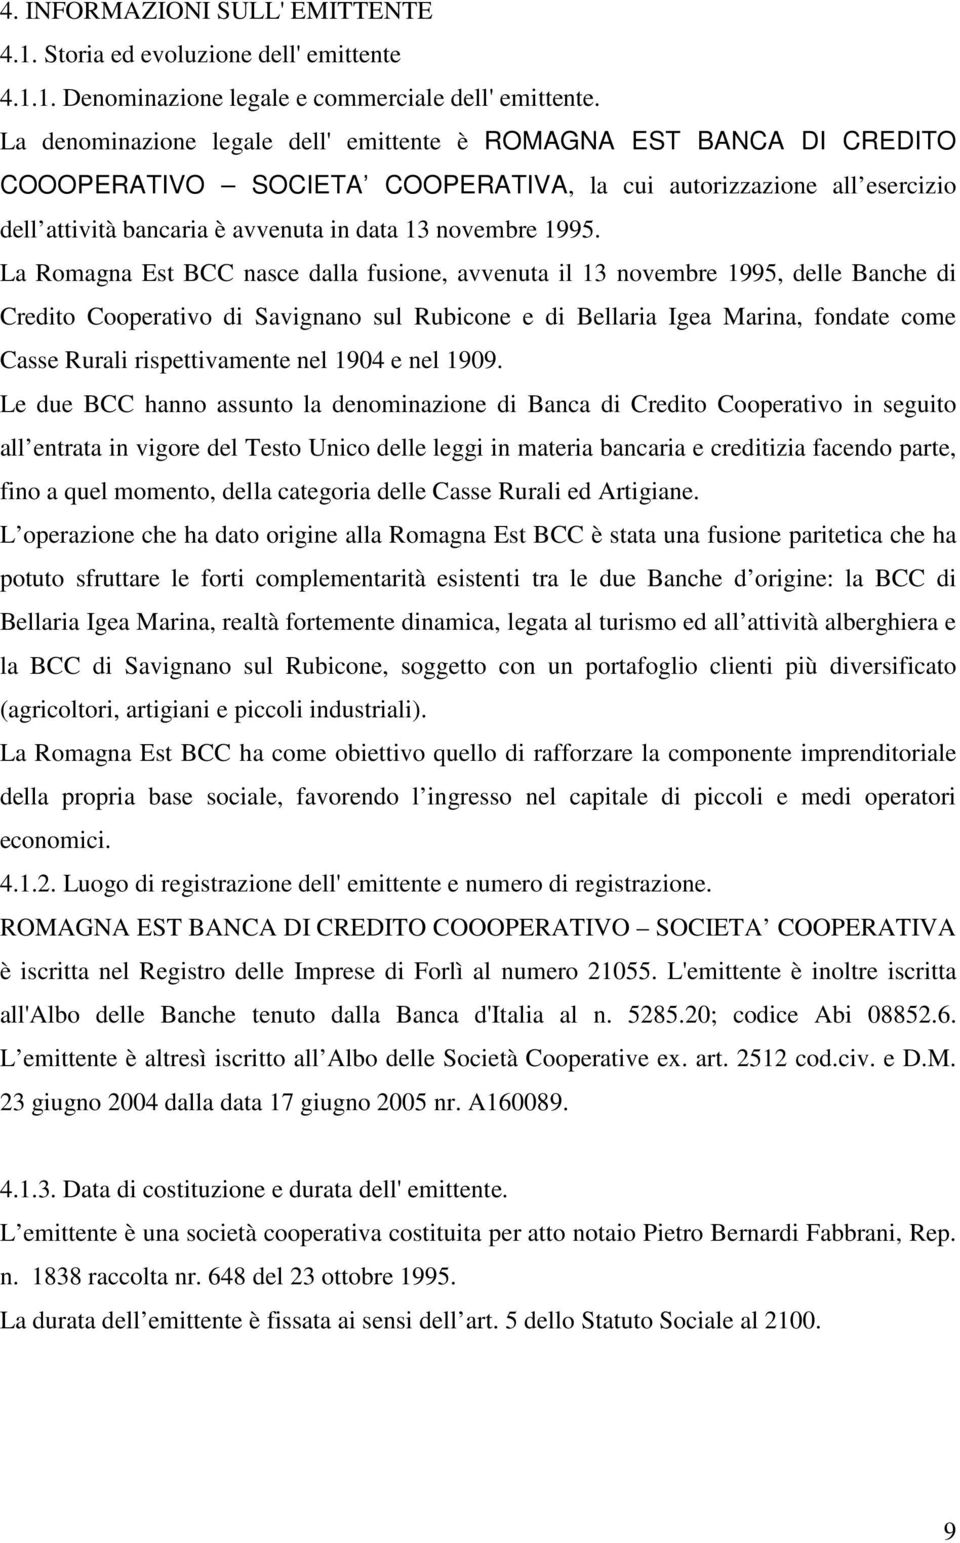 La Romagna Est BCC nasce dalla fusione, avvenuta il 13 novembre 1995, delle Banche di Credito Cooperativo di Savignano sul Rubicone e di Bellaria Igea Marina, fondate come Casse Rurali